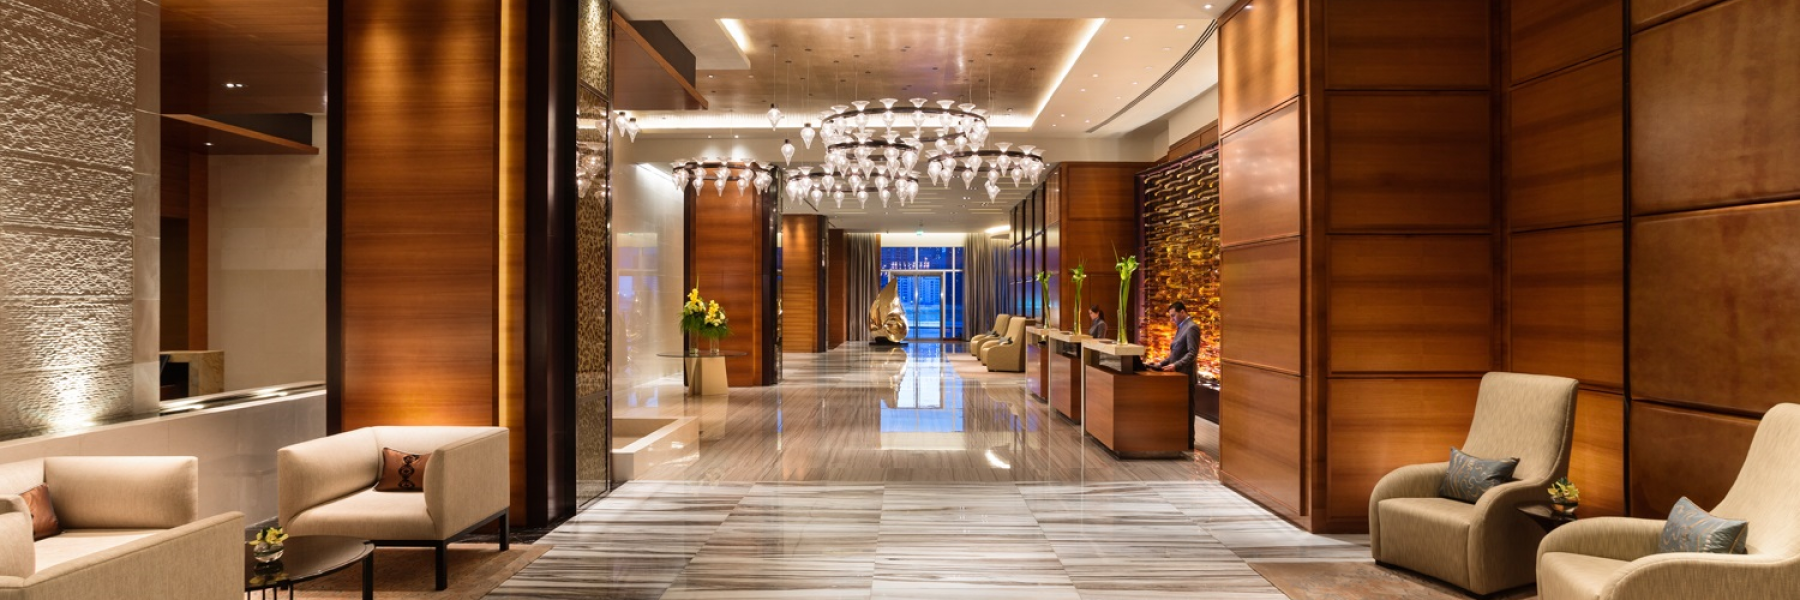 دليل فوربس للسفر يصنّف فندق روزوود أبوظبي من بين أفضل الفنادق الفاخرة في قائمته لعام 2020